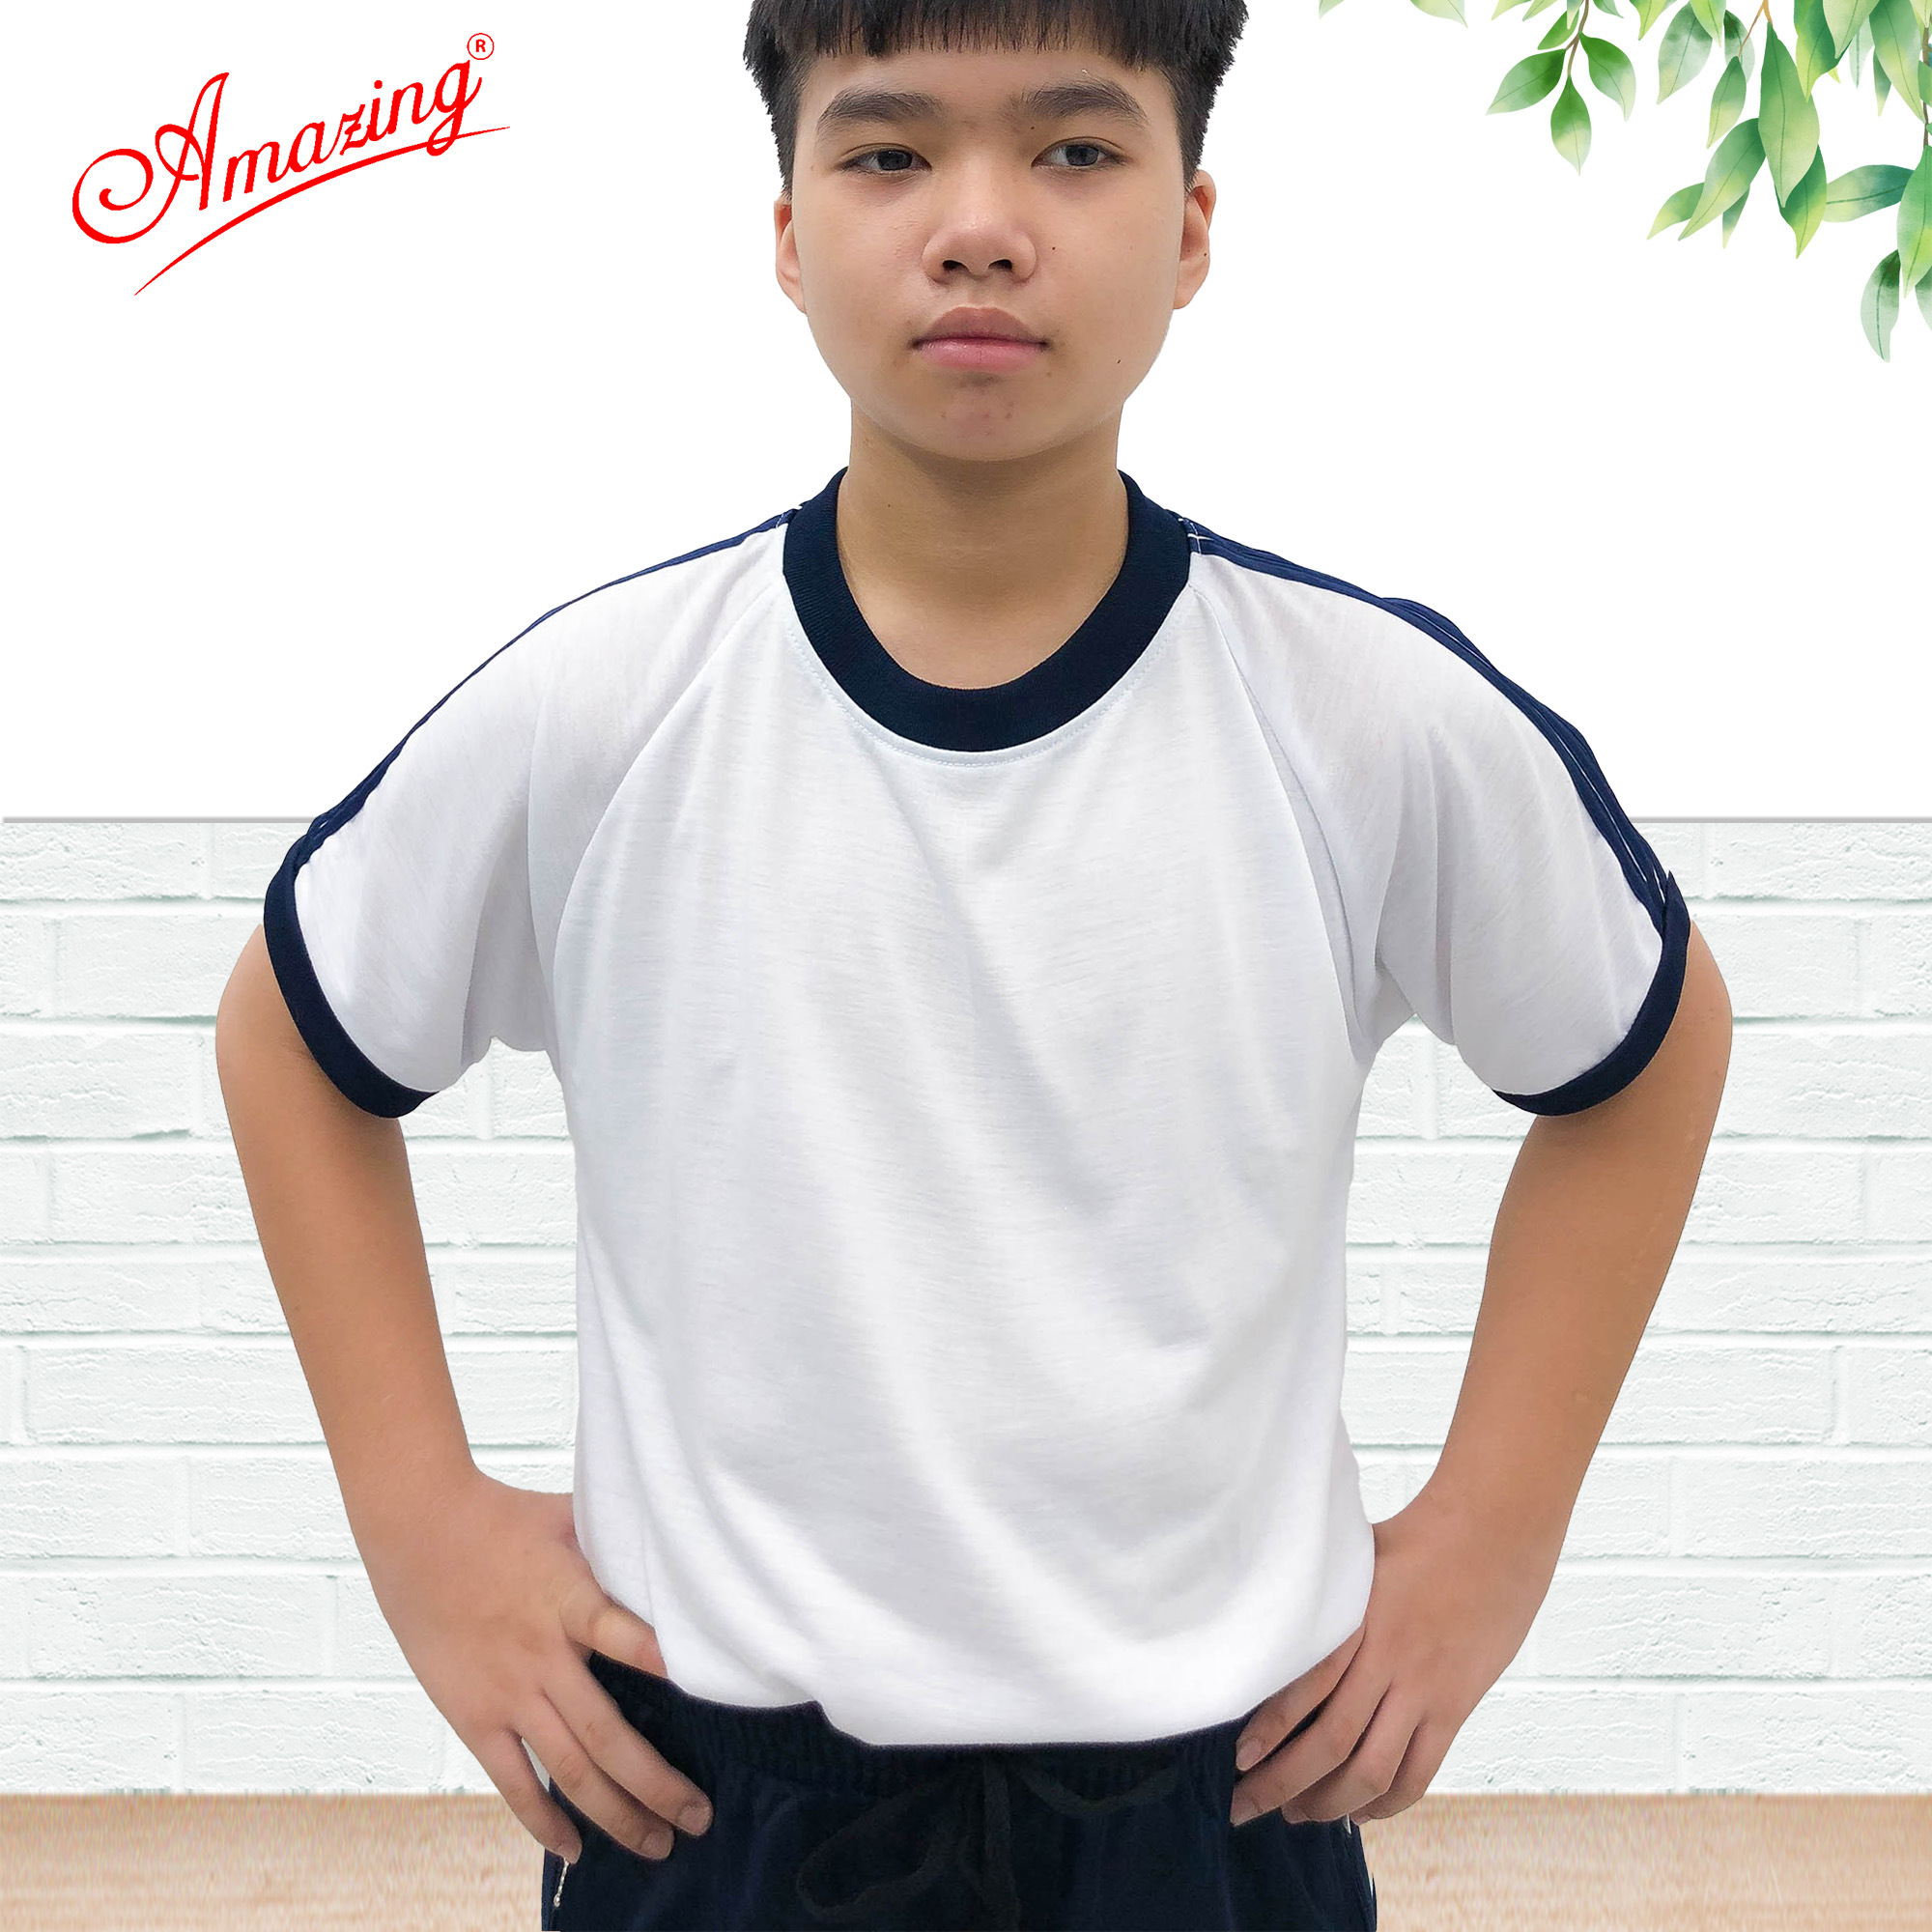 Áo thun thể dục thương hiệu Amazing cho bé trai, cổ bẻ và cổ tròn, đồng phục thể thao cho học sinh nam nữ các cấp